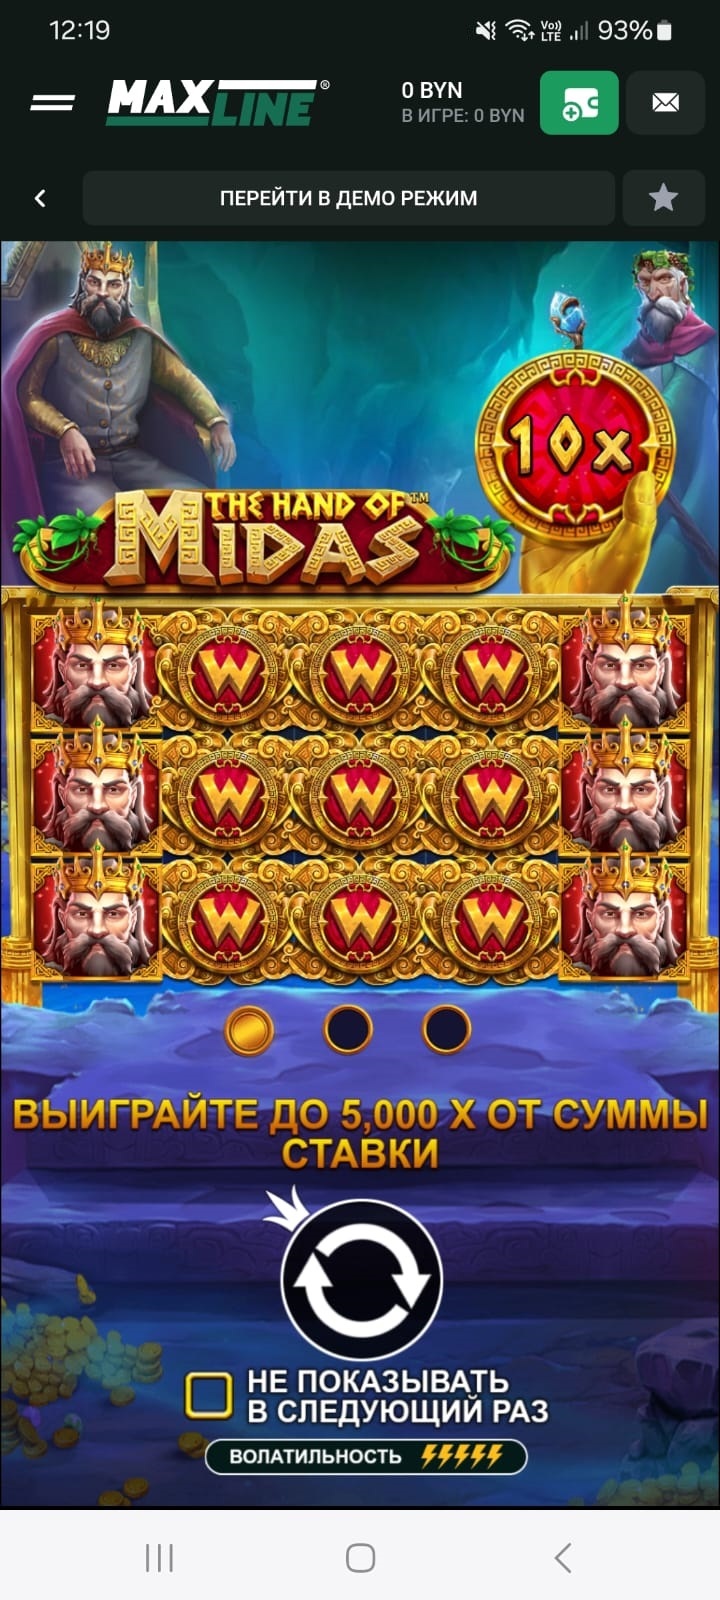 Изображения царя Мидаса в игре